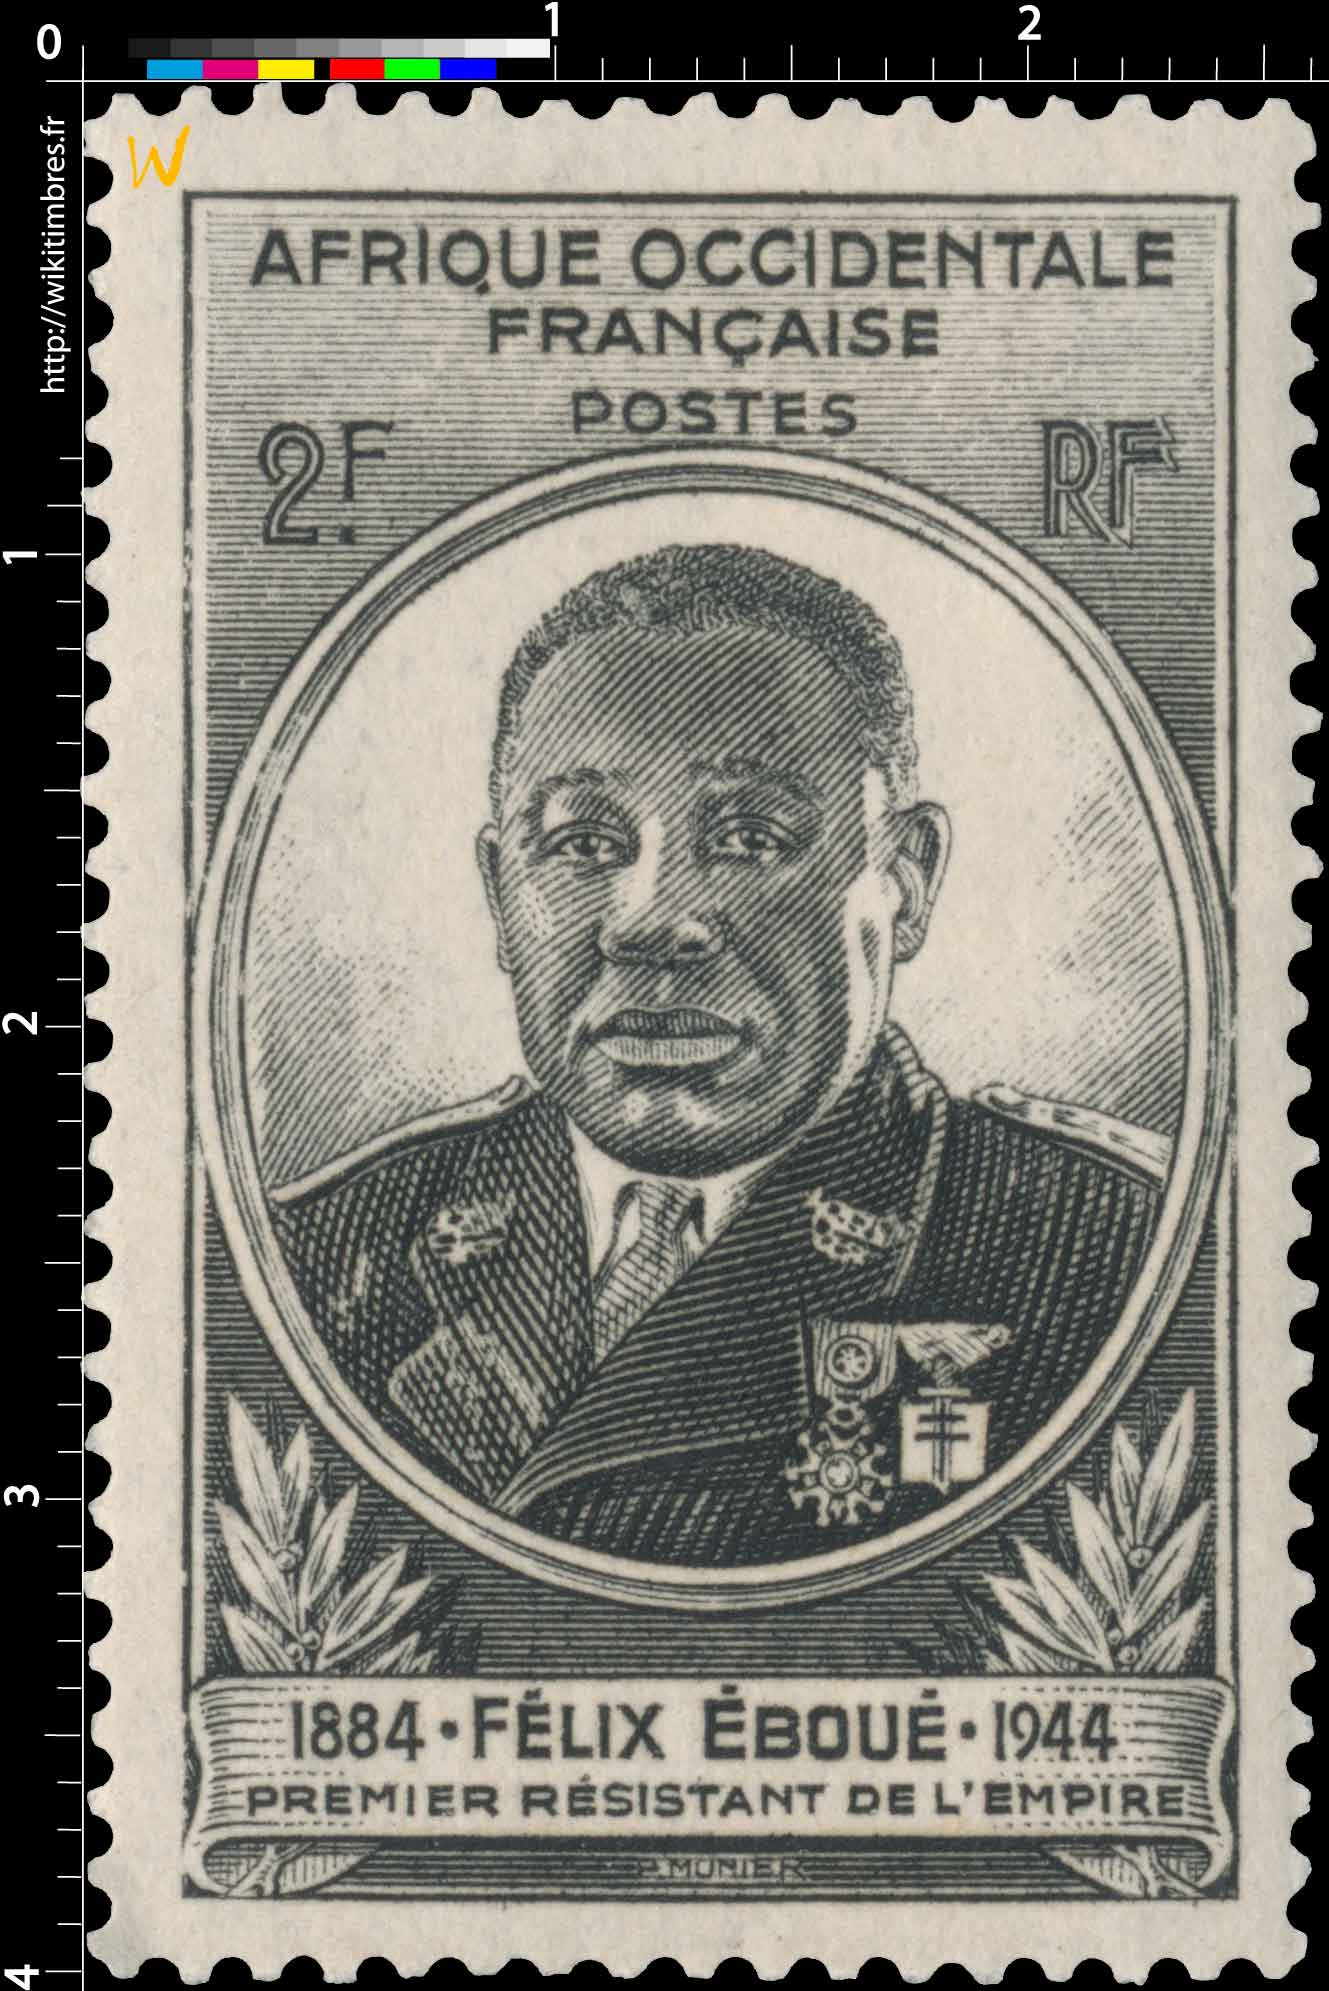 Afrique Occidentale Française - Félix Eboué 1884-1944, premier résistant de l'empire